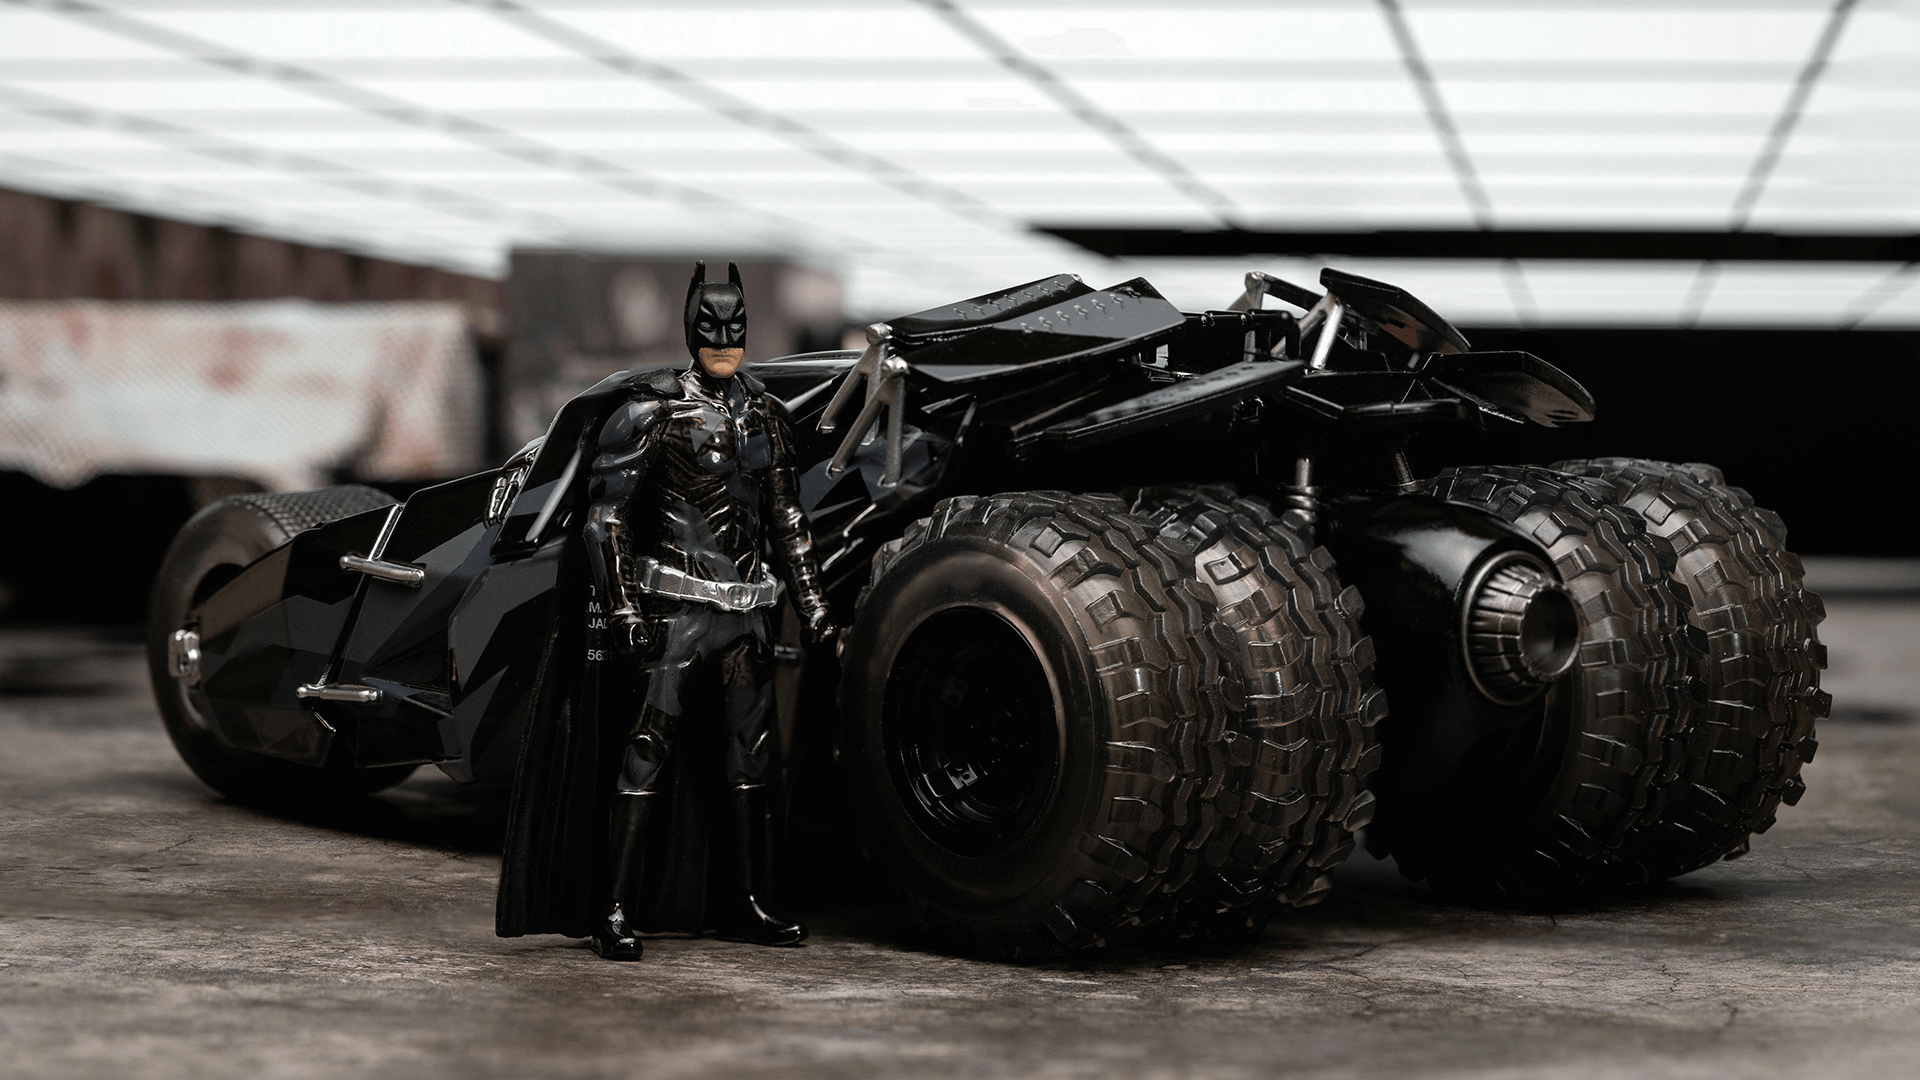 Batman The Dark Knight Tumbler Batmobile 1/24 avec figurines de Batman  METALS 98261